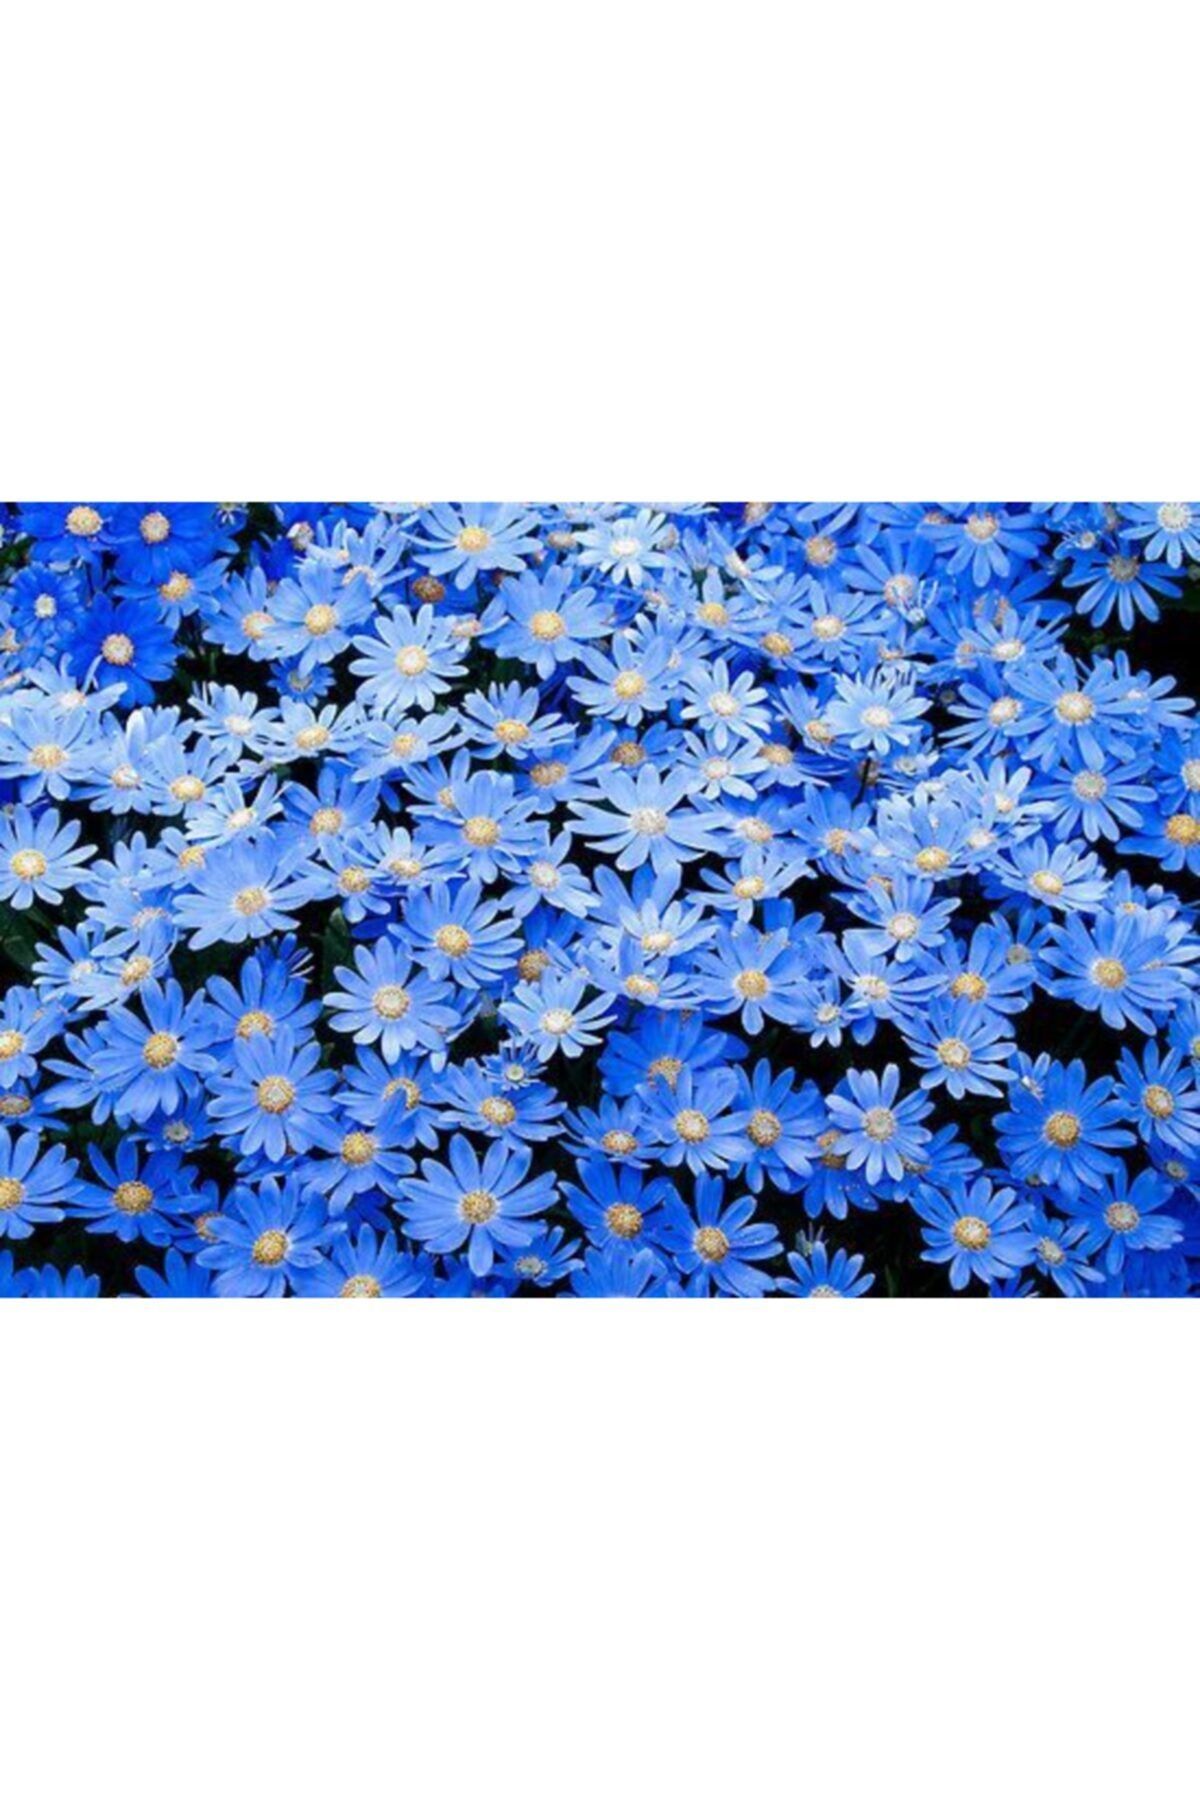 LOBELYA TOHUMCULUK 10 Adet Mavi Papatya Çiçeği Tohumu